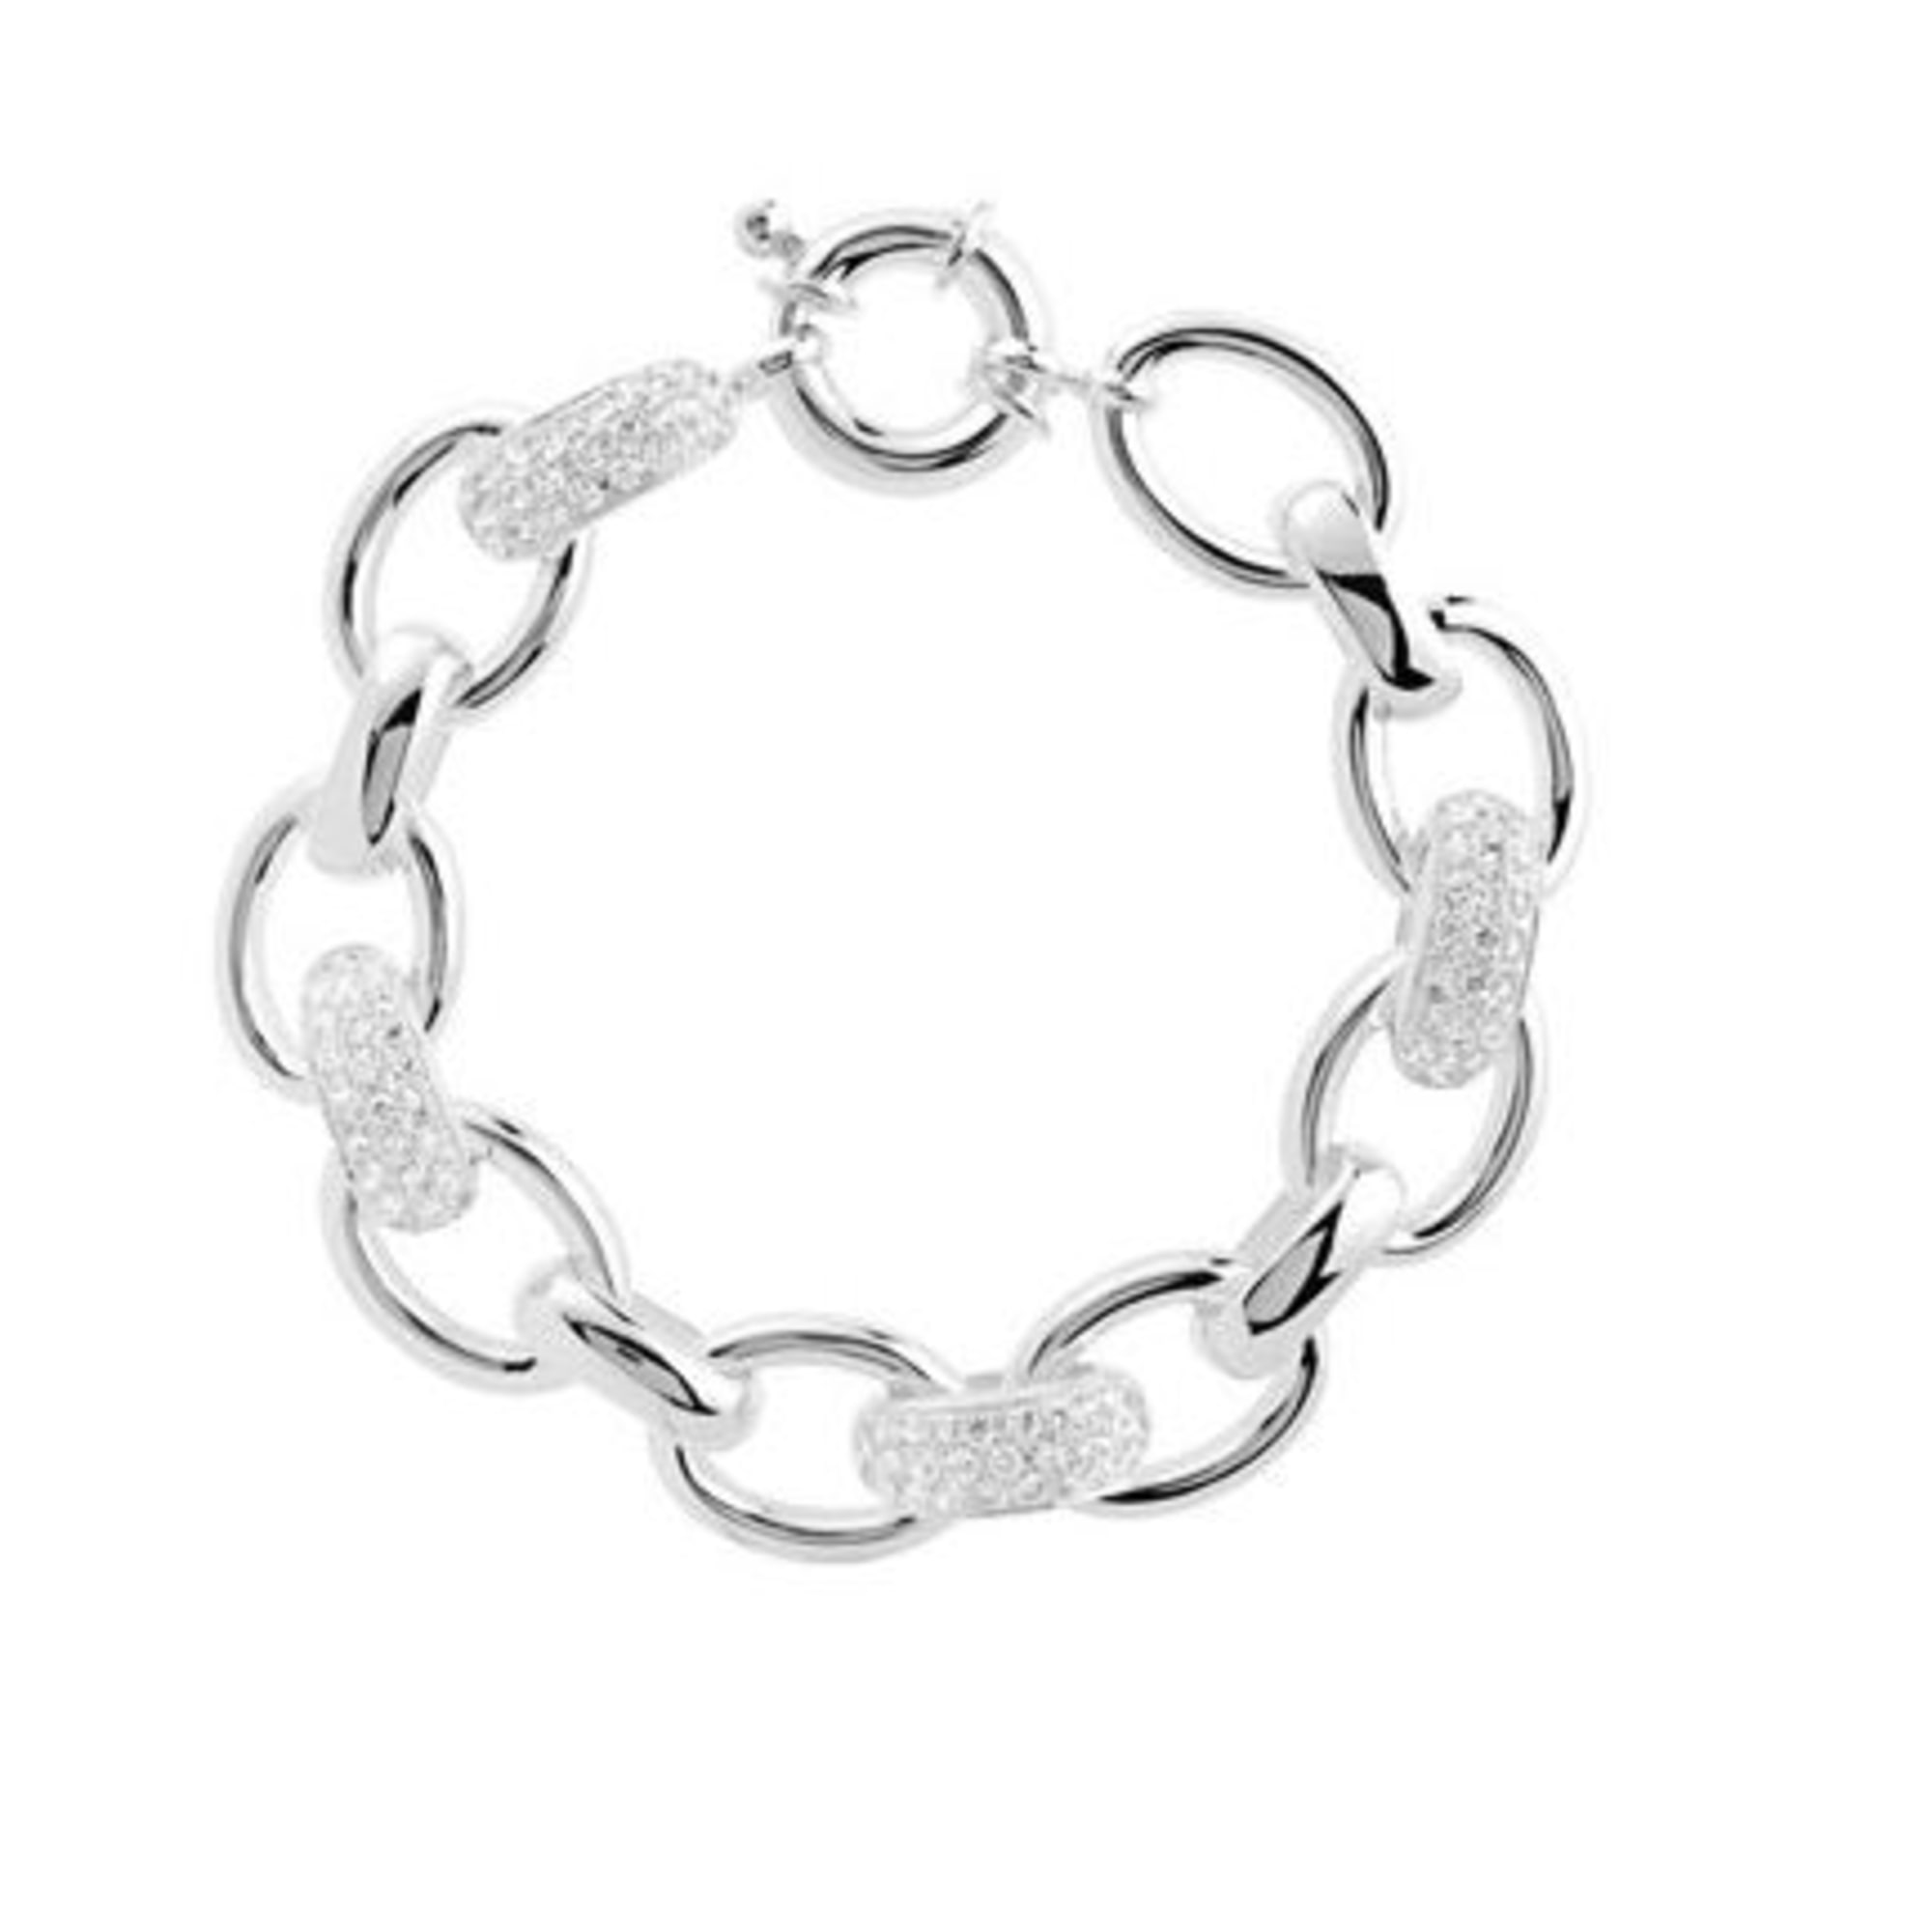 Bracelet MATY argenté vendu par Nathalie 1355510 - 772954